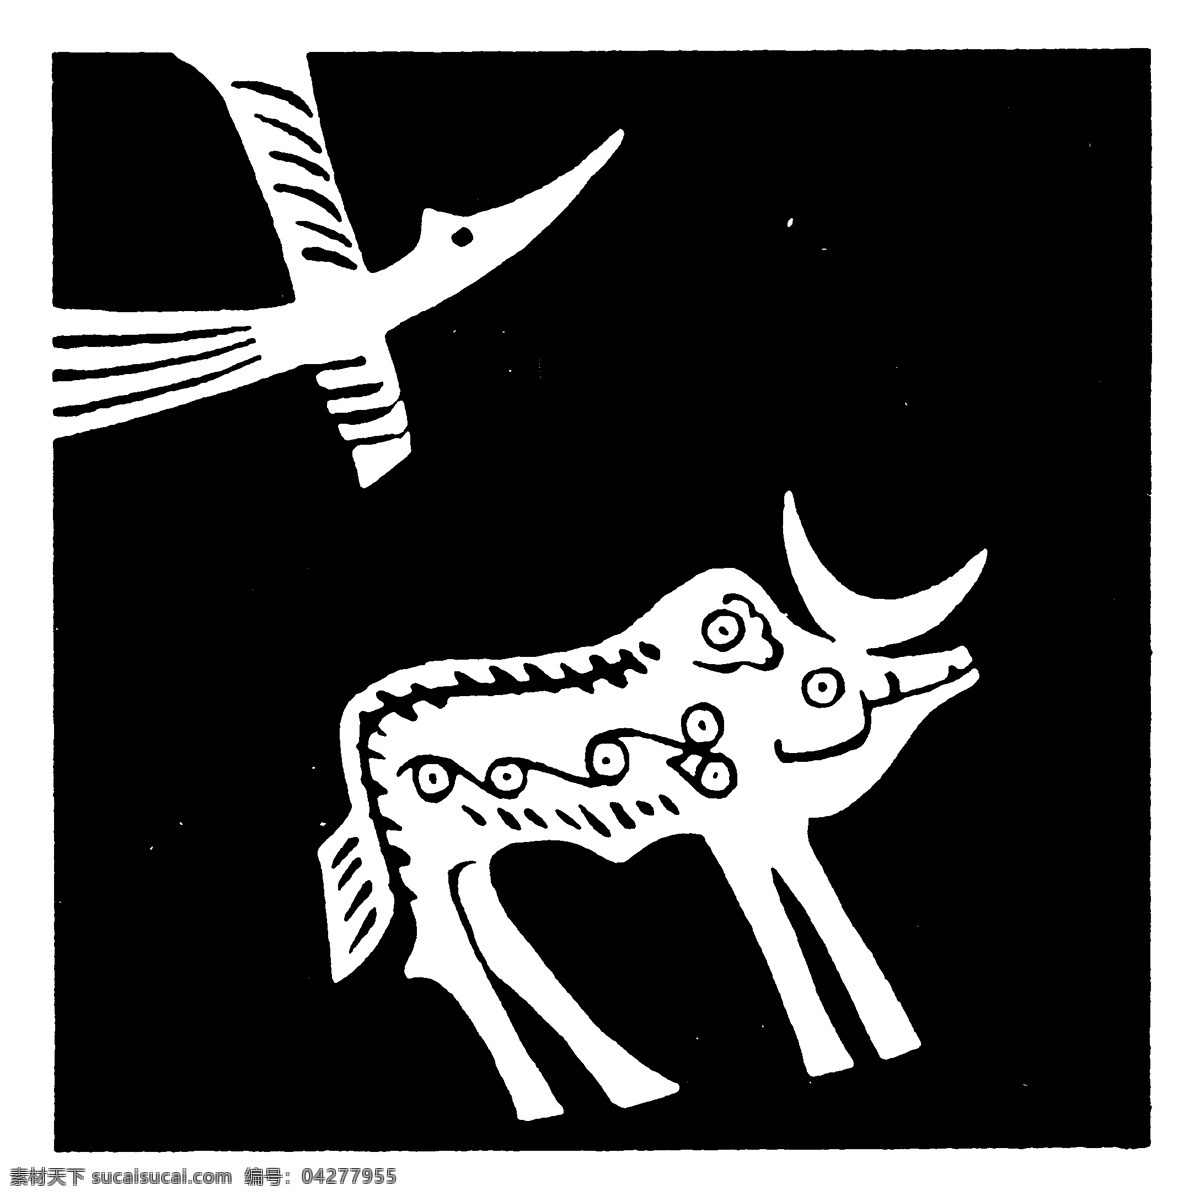 器物图案 秦汉时期图案 中国传统图案 图案198 图案 设计素材 装饰图案 书画美术 黑色